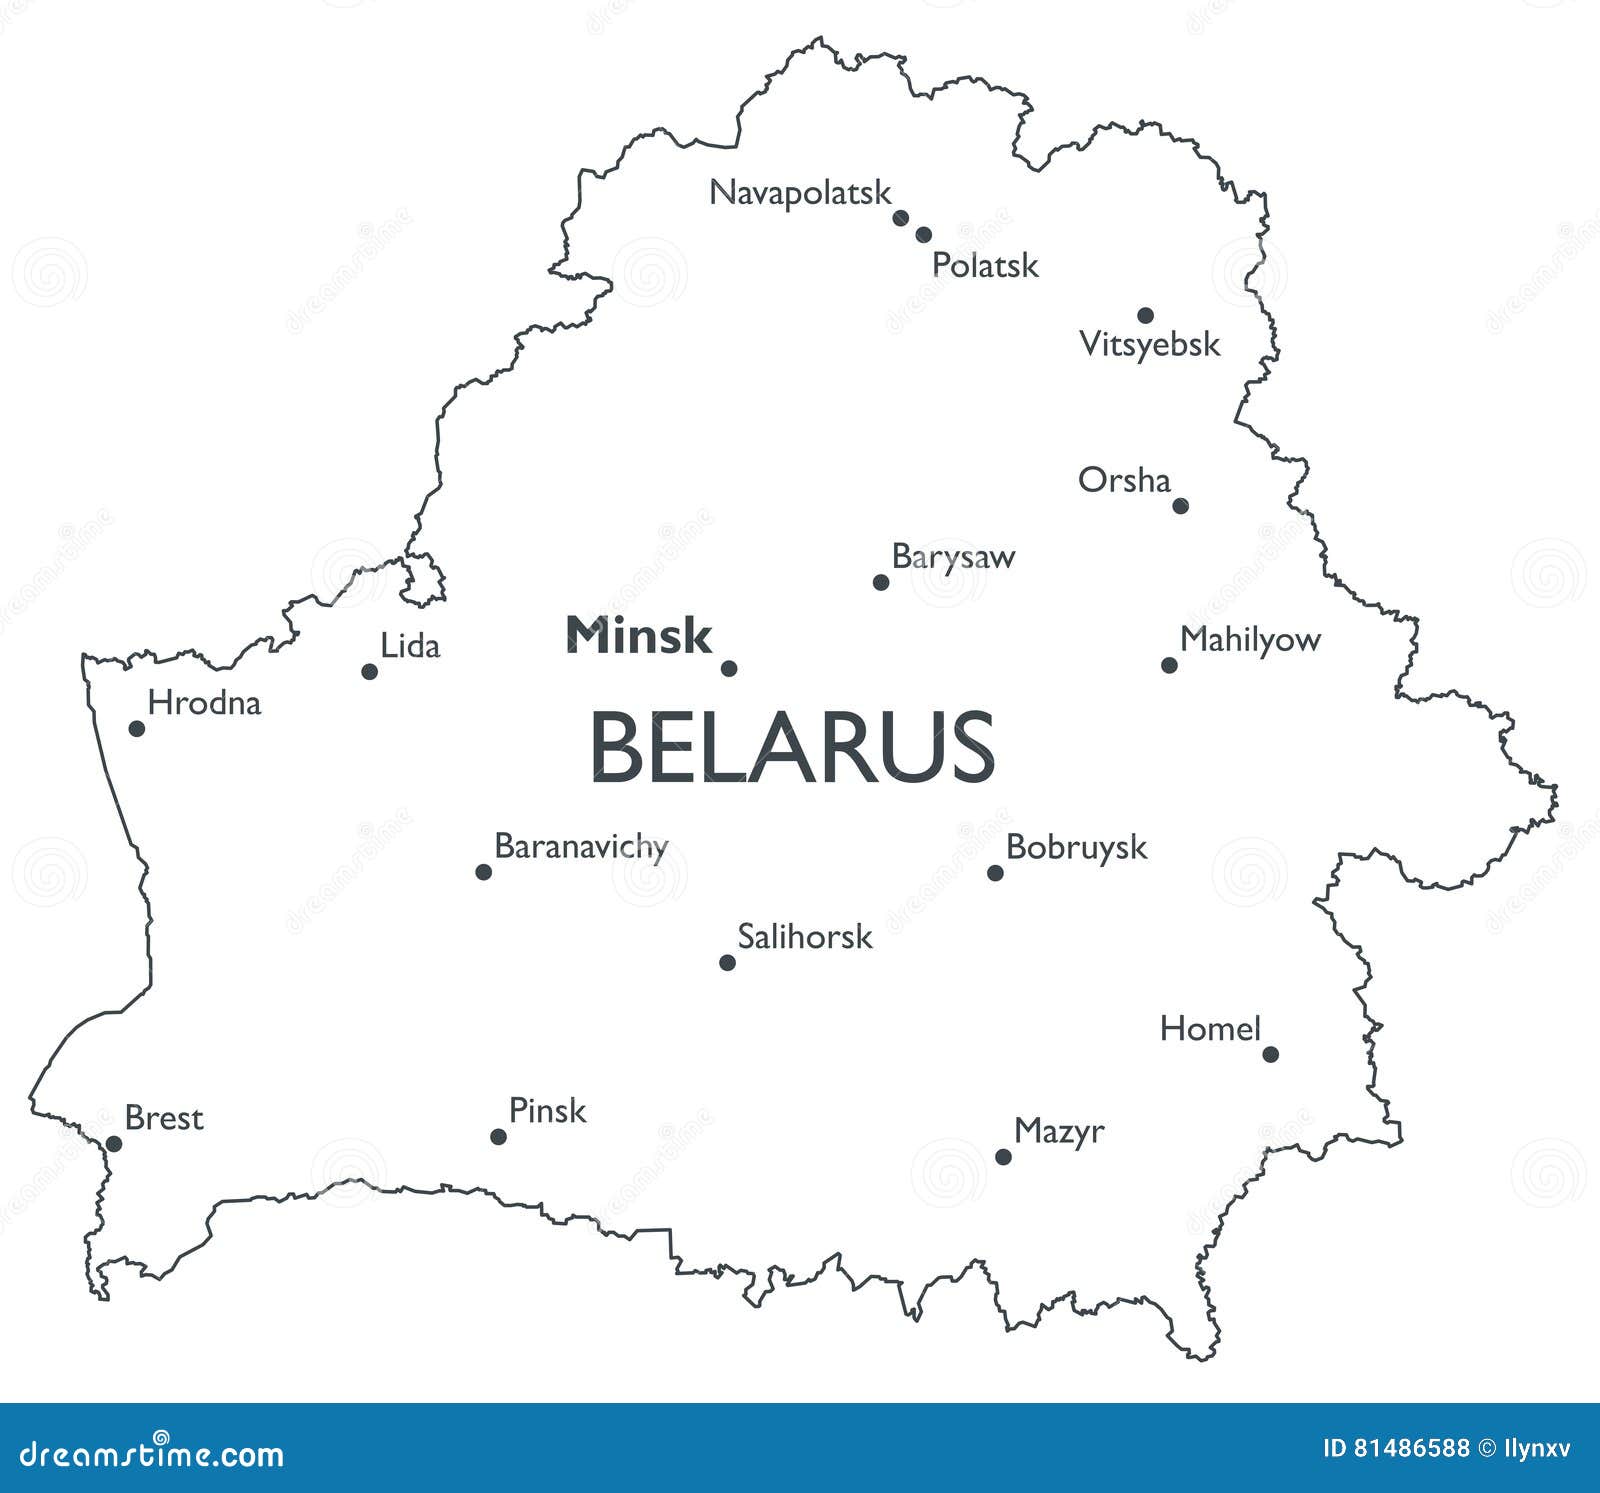  map of belarus